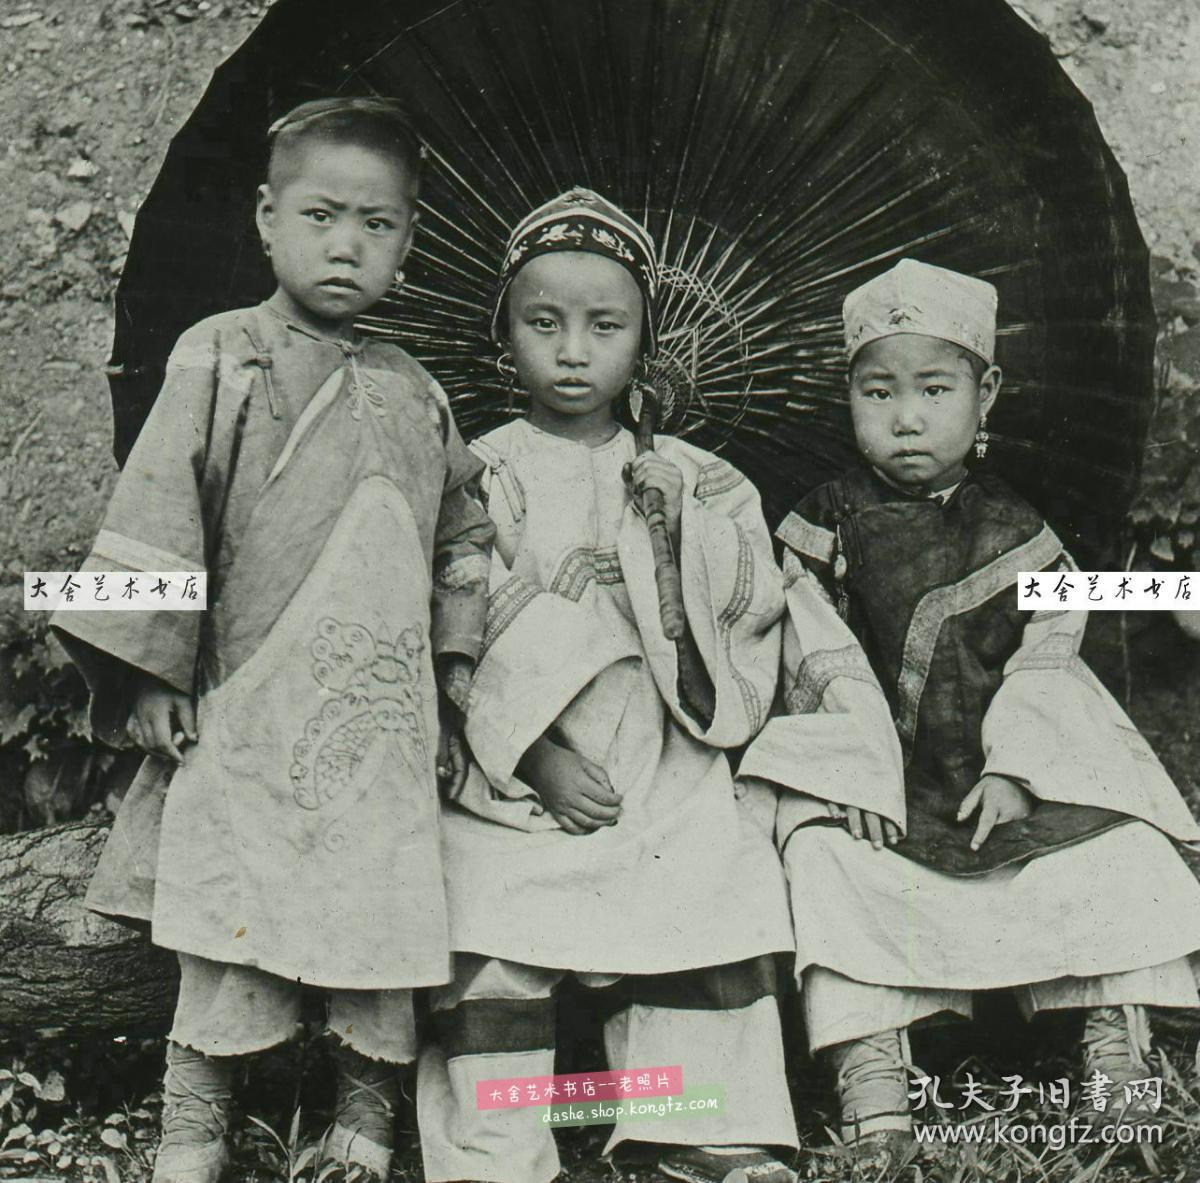 清代民国玻璃幻灯片-----民国时期穿传统中国服装服饰的儿童老玻璃幻灯